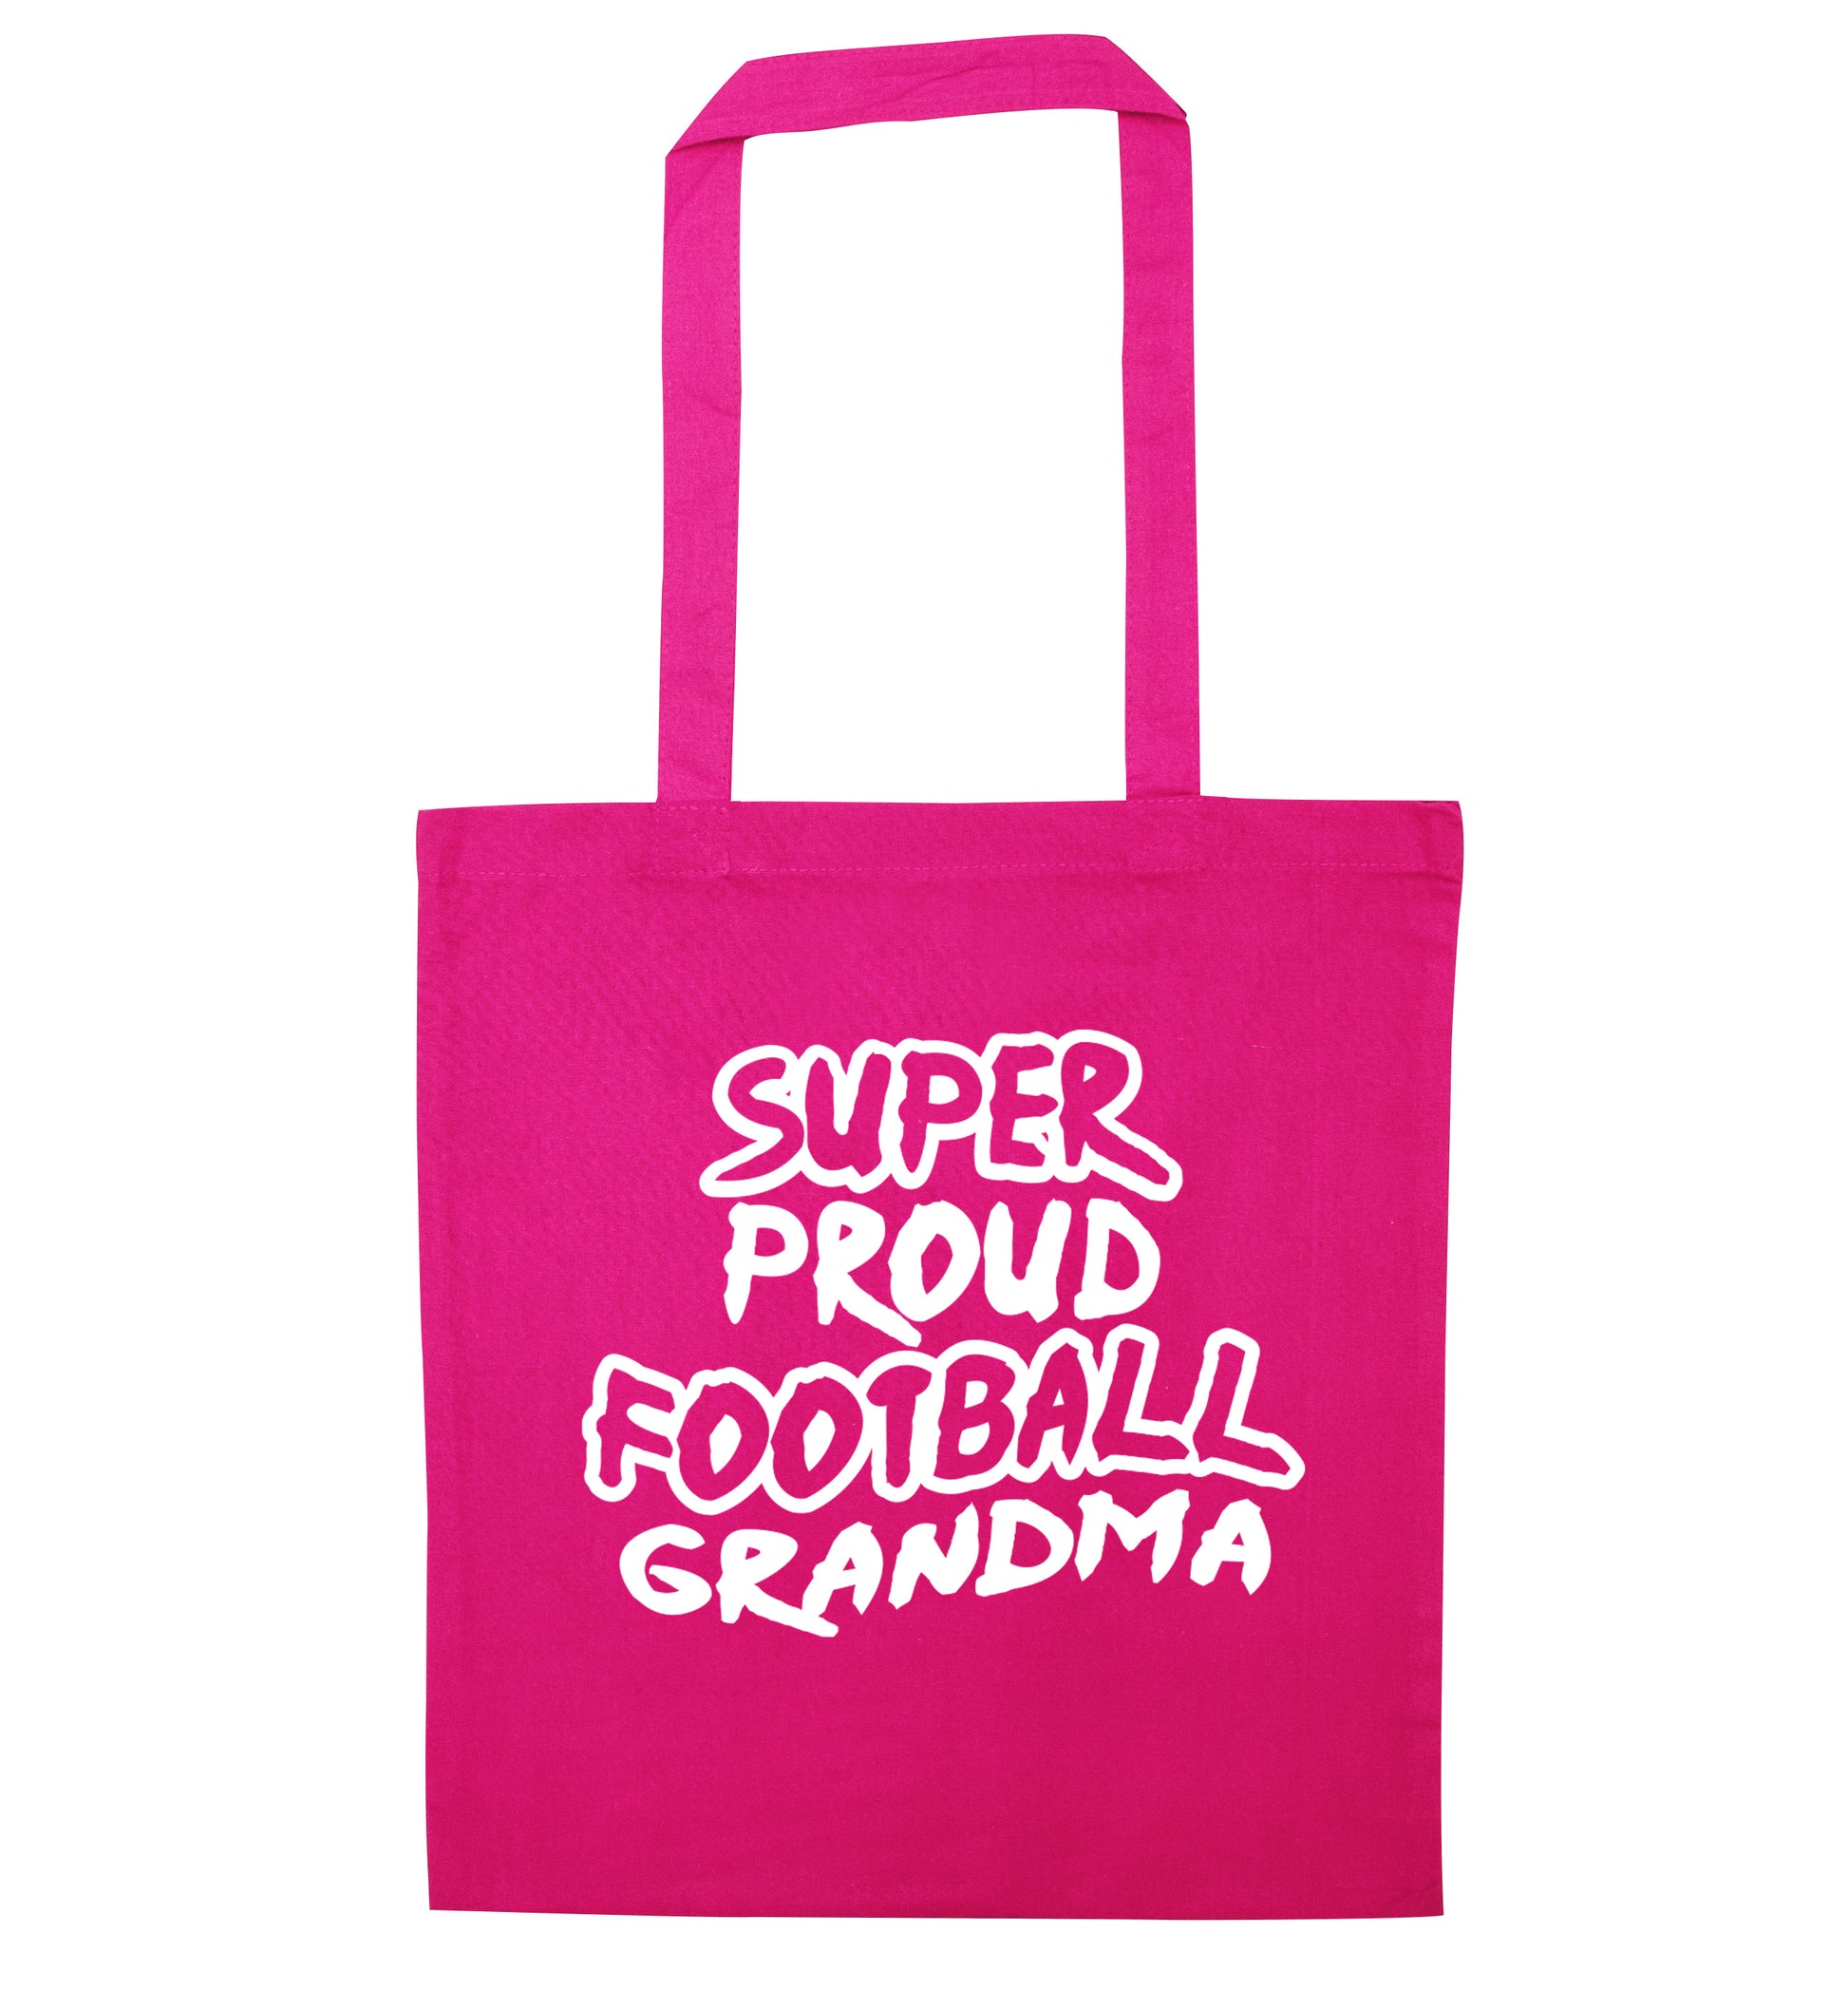 Super proud football grandma pink tote bag